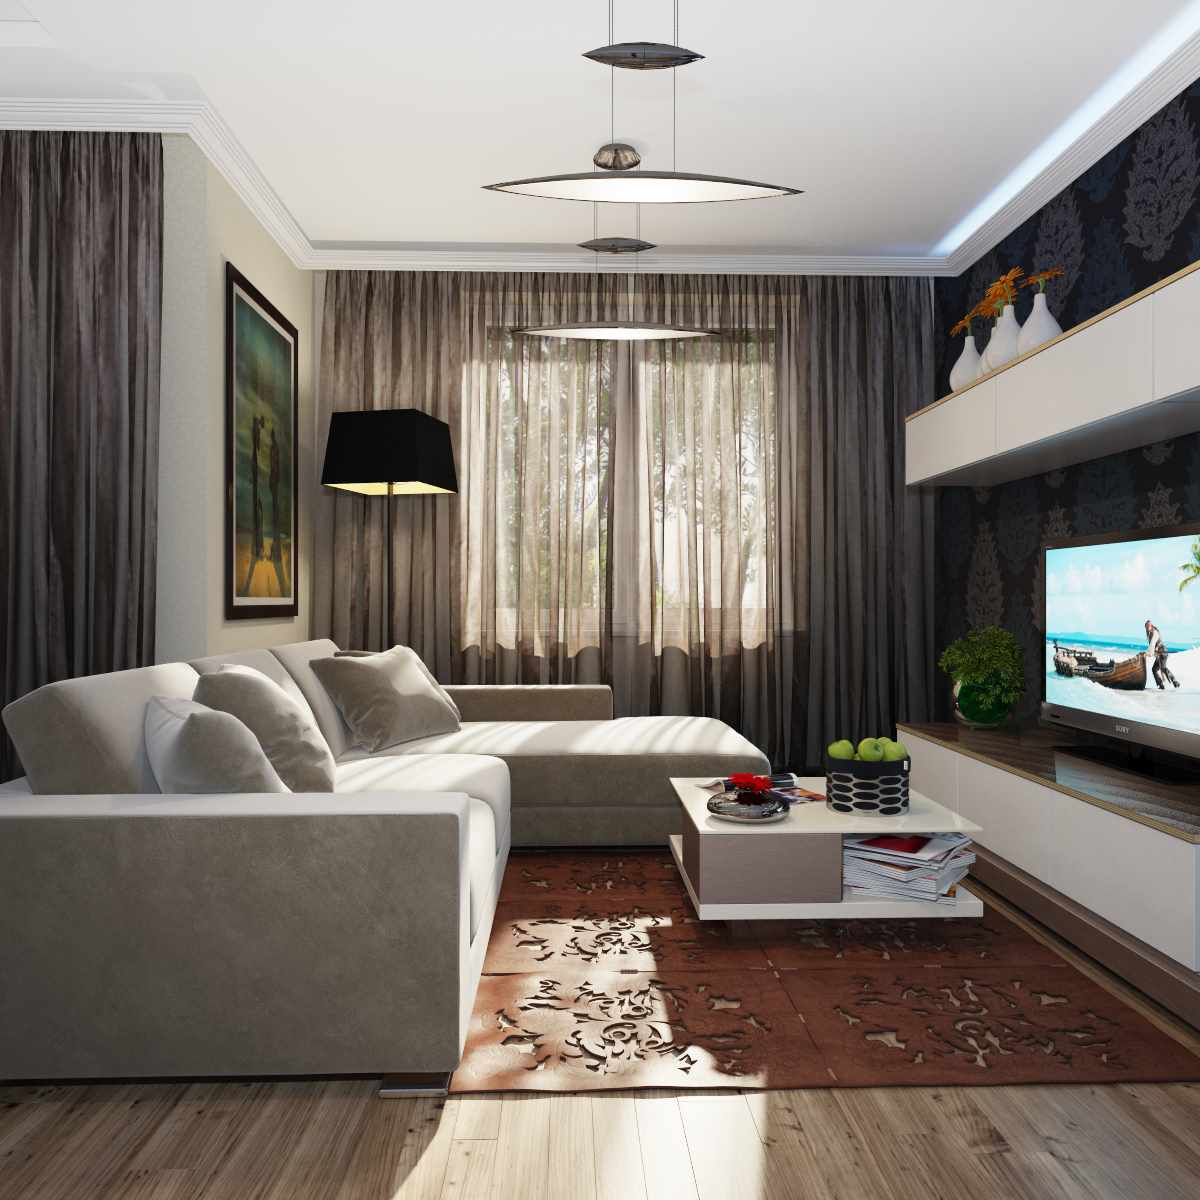 Un esempio di un design insolito di un soggiorno di 19-20 mq